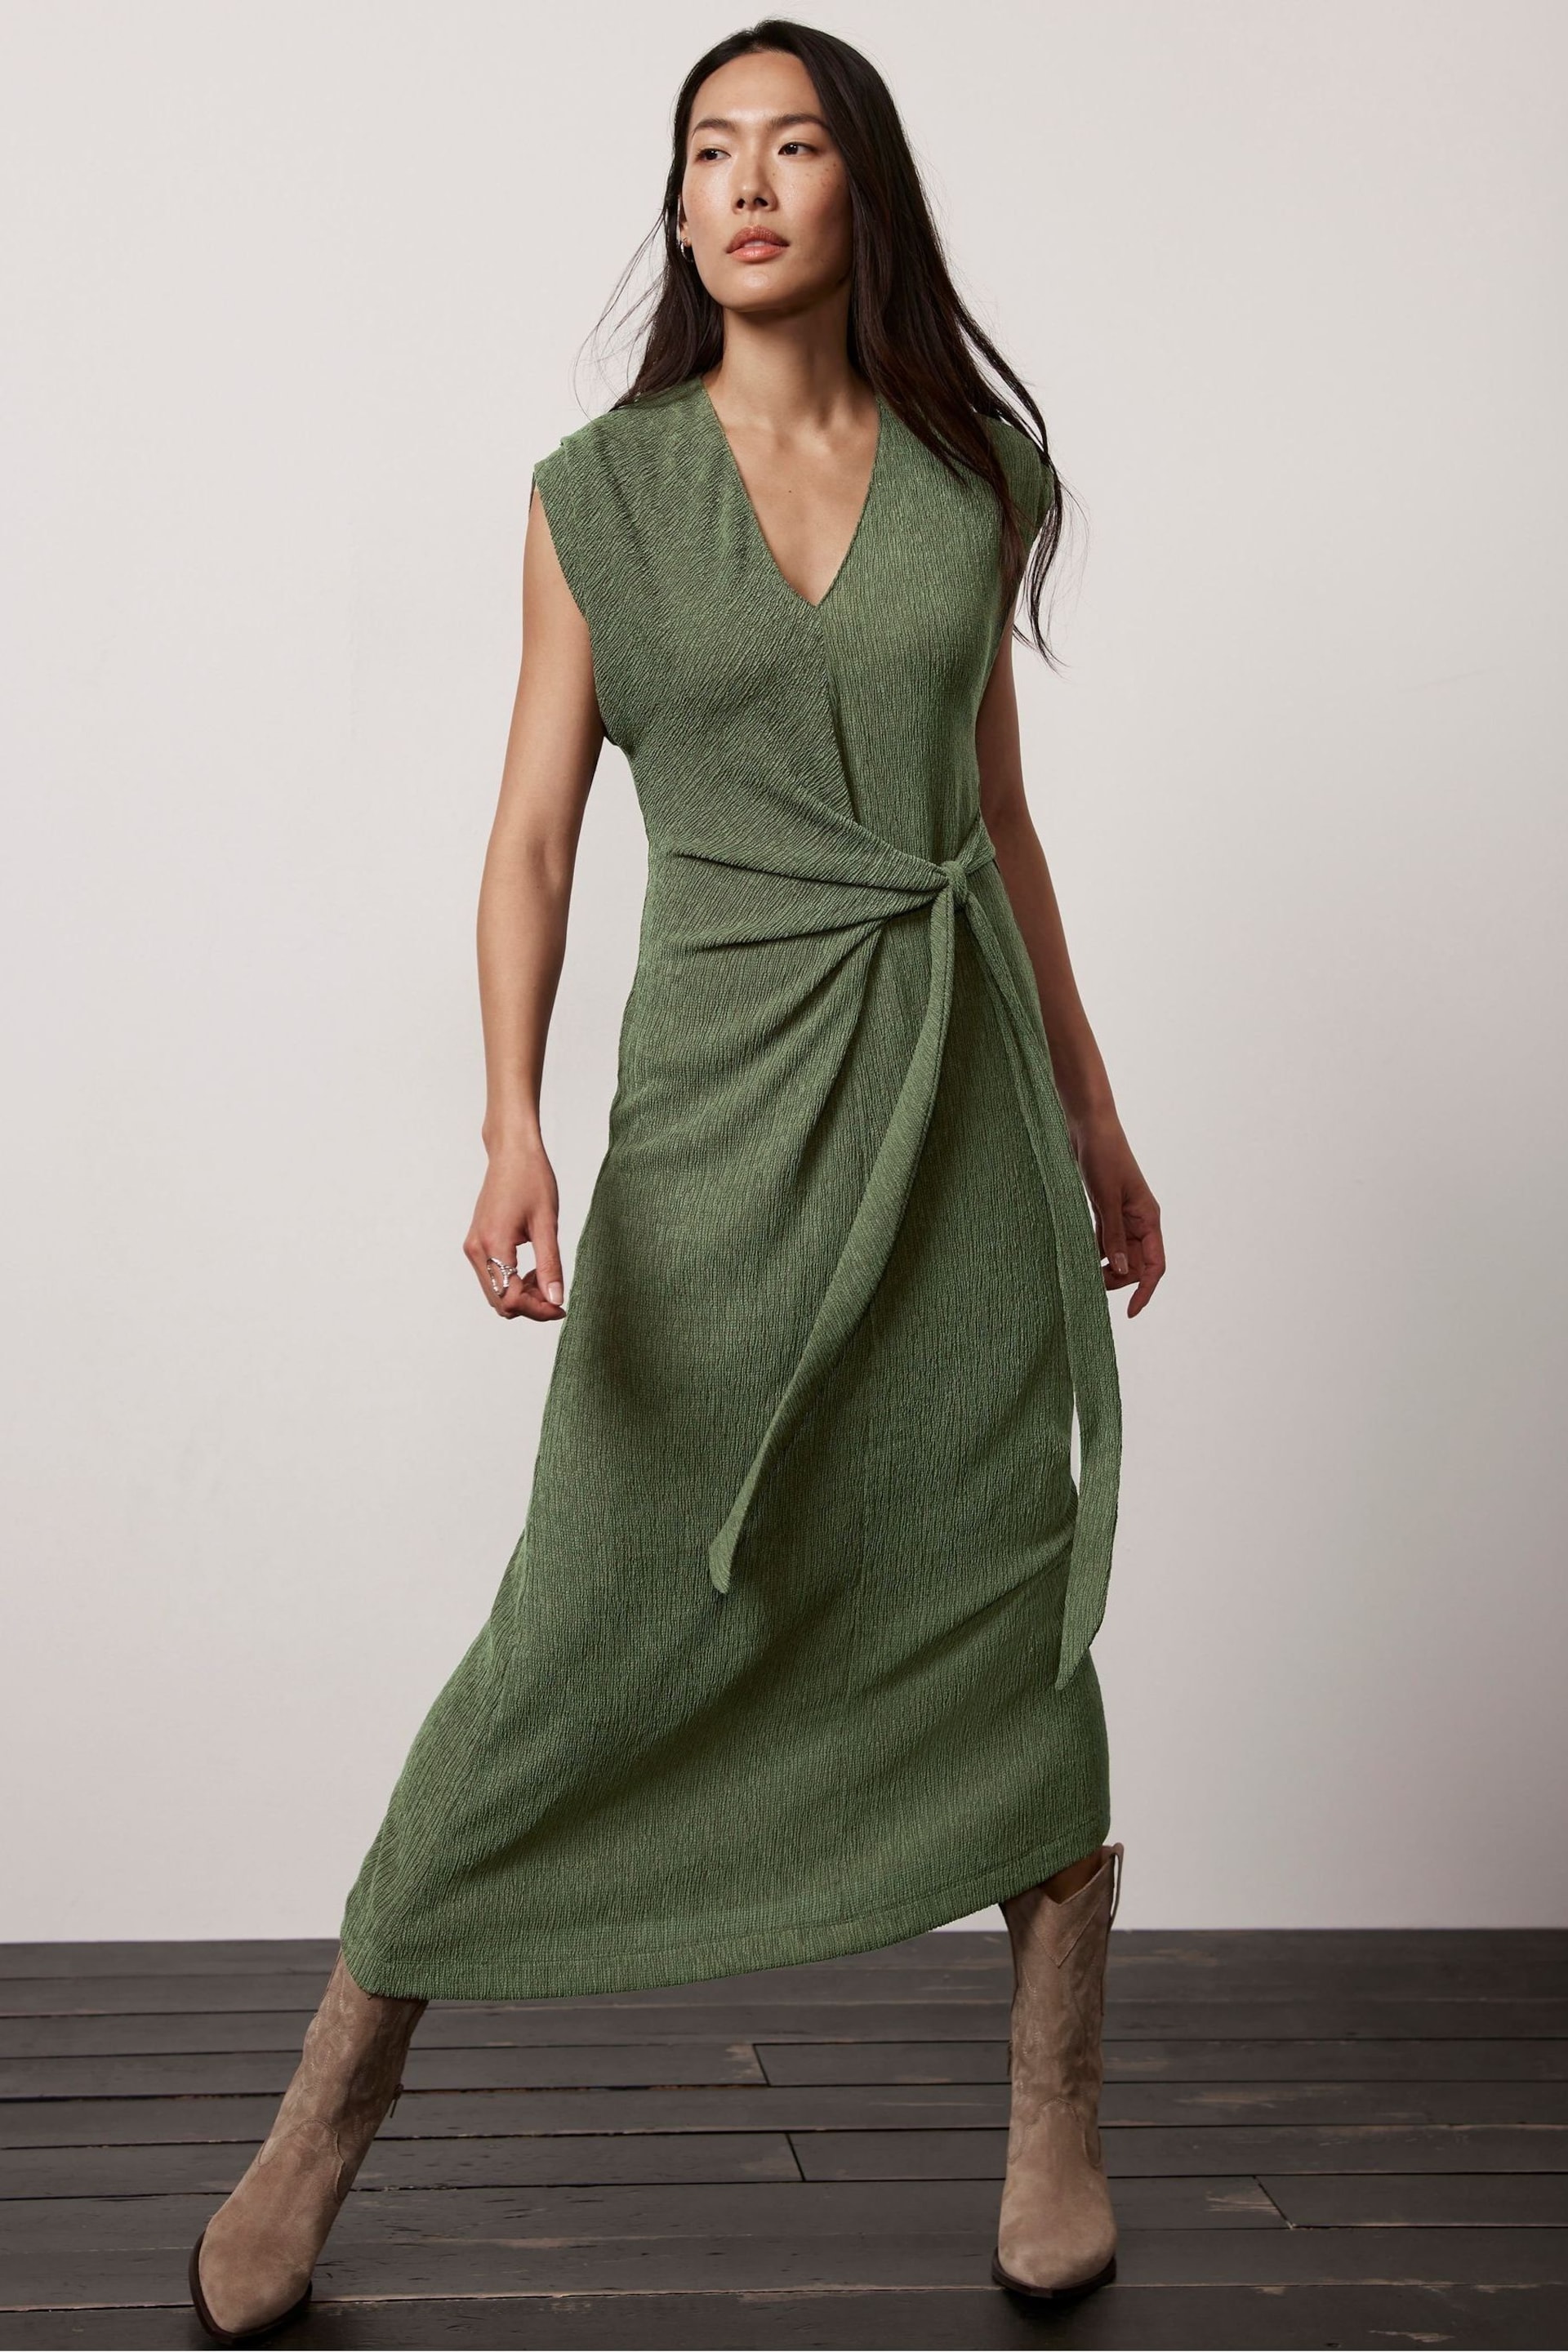 Mint Velvet Green Textured Midi Dress - Image 1 of 4